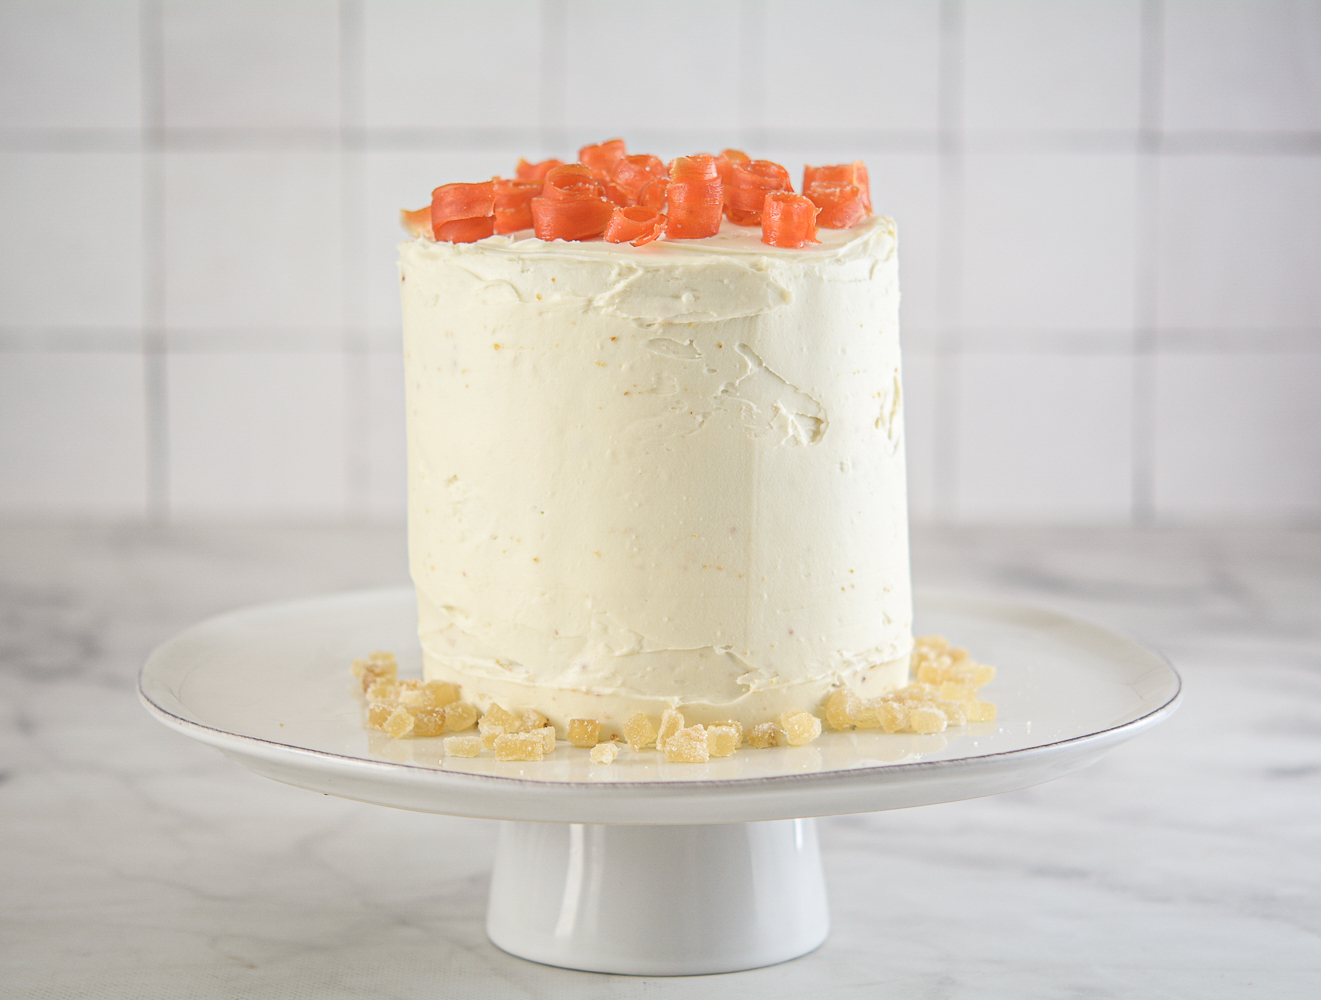 Best Carrot Cake Recipe - Moist & Fluffy! Grandma's recipe